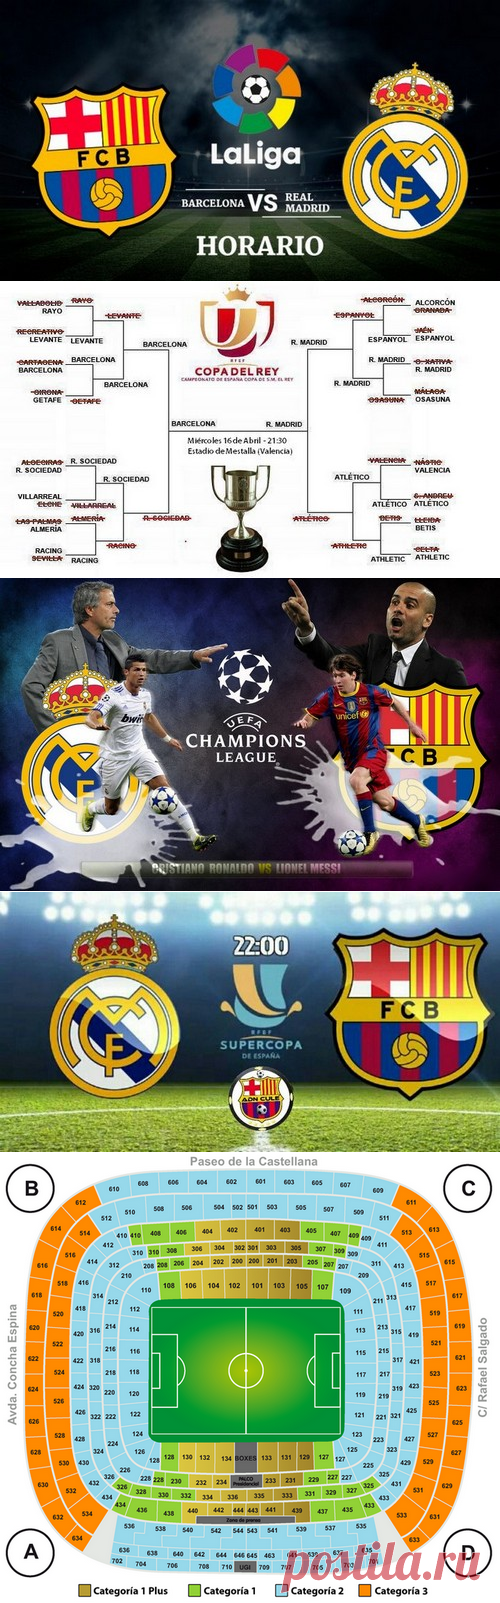 Купить билеты на футбол на матчи Эль Классико  El Clasico, Реал Мадрид R- ФК Барселона  , сезон 2020-2021 г., 24-25 октября  2020  года в  Барселоне, 10-11 апреля  2021  года в Мадриде.